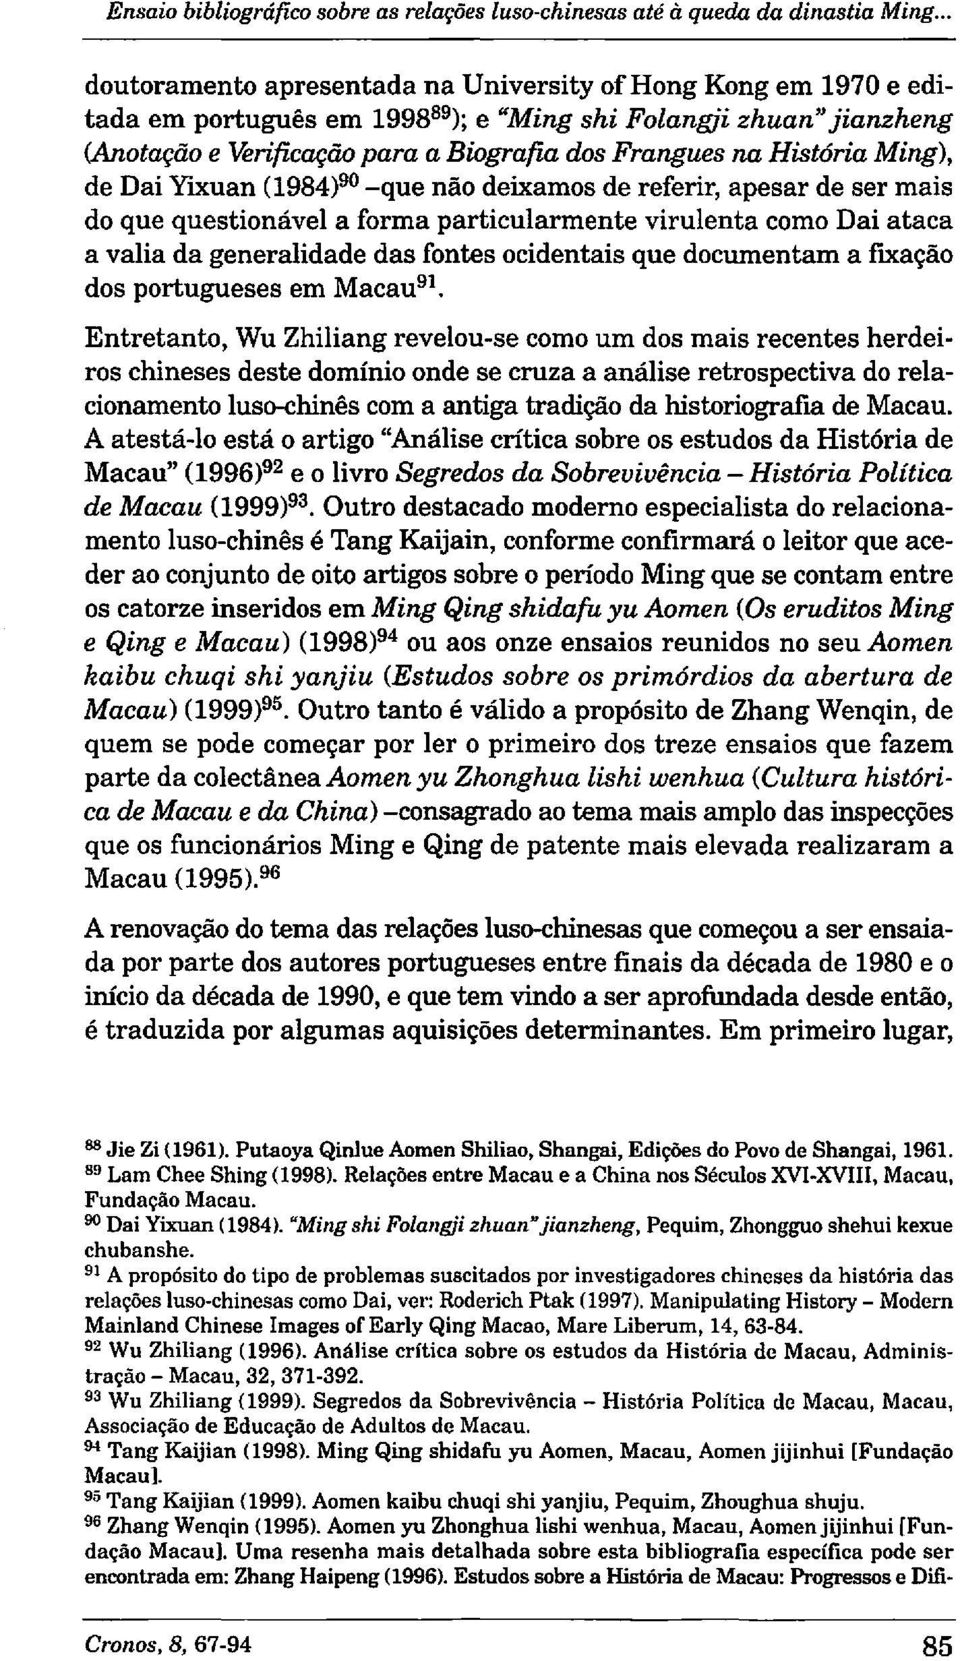 História Ming), de Dai YIXuan (1984)90 -que nao deixamos de referir, apesar de ser mais do que questionável a forma particularmente virulenta como Dai ataca a valia da generalidad e das fontes